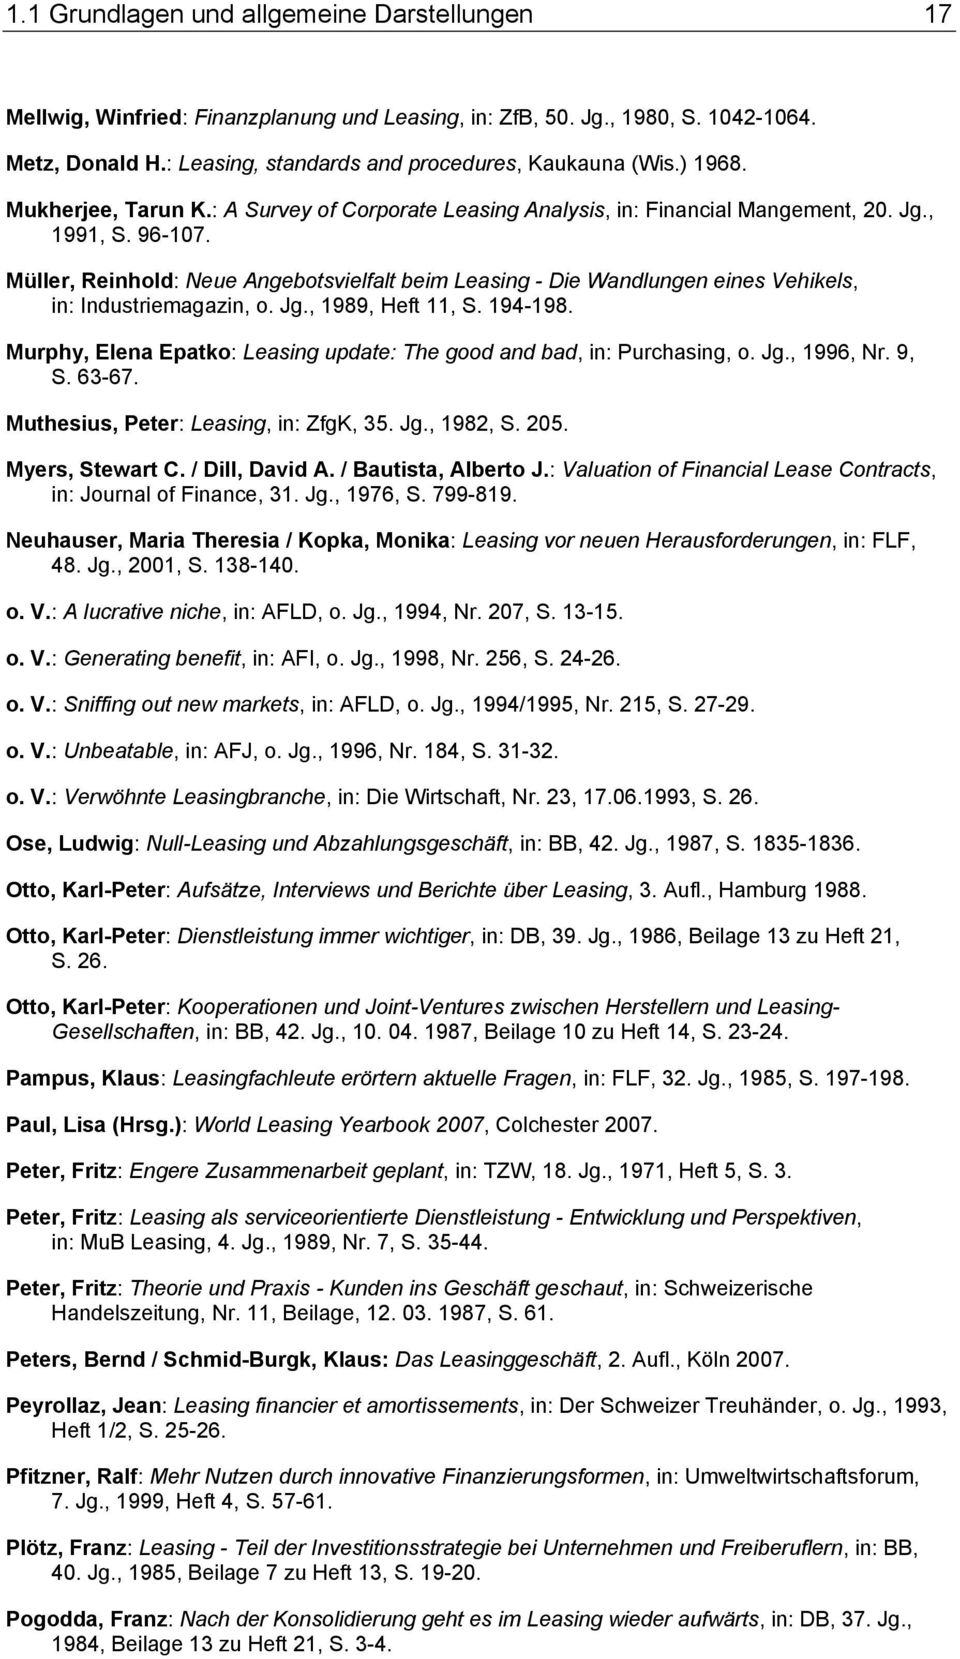 Müller, Reinhold: Neue Angebotsvielfalt beim Leasing - Die Wandlungen eines Vehikels, in: Industriemagazin, o. Jg., 1989, Heft 11, S. 194-198.